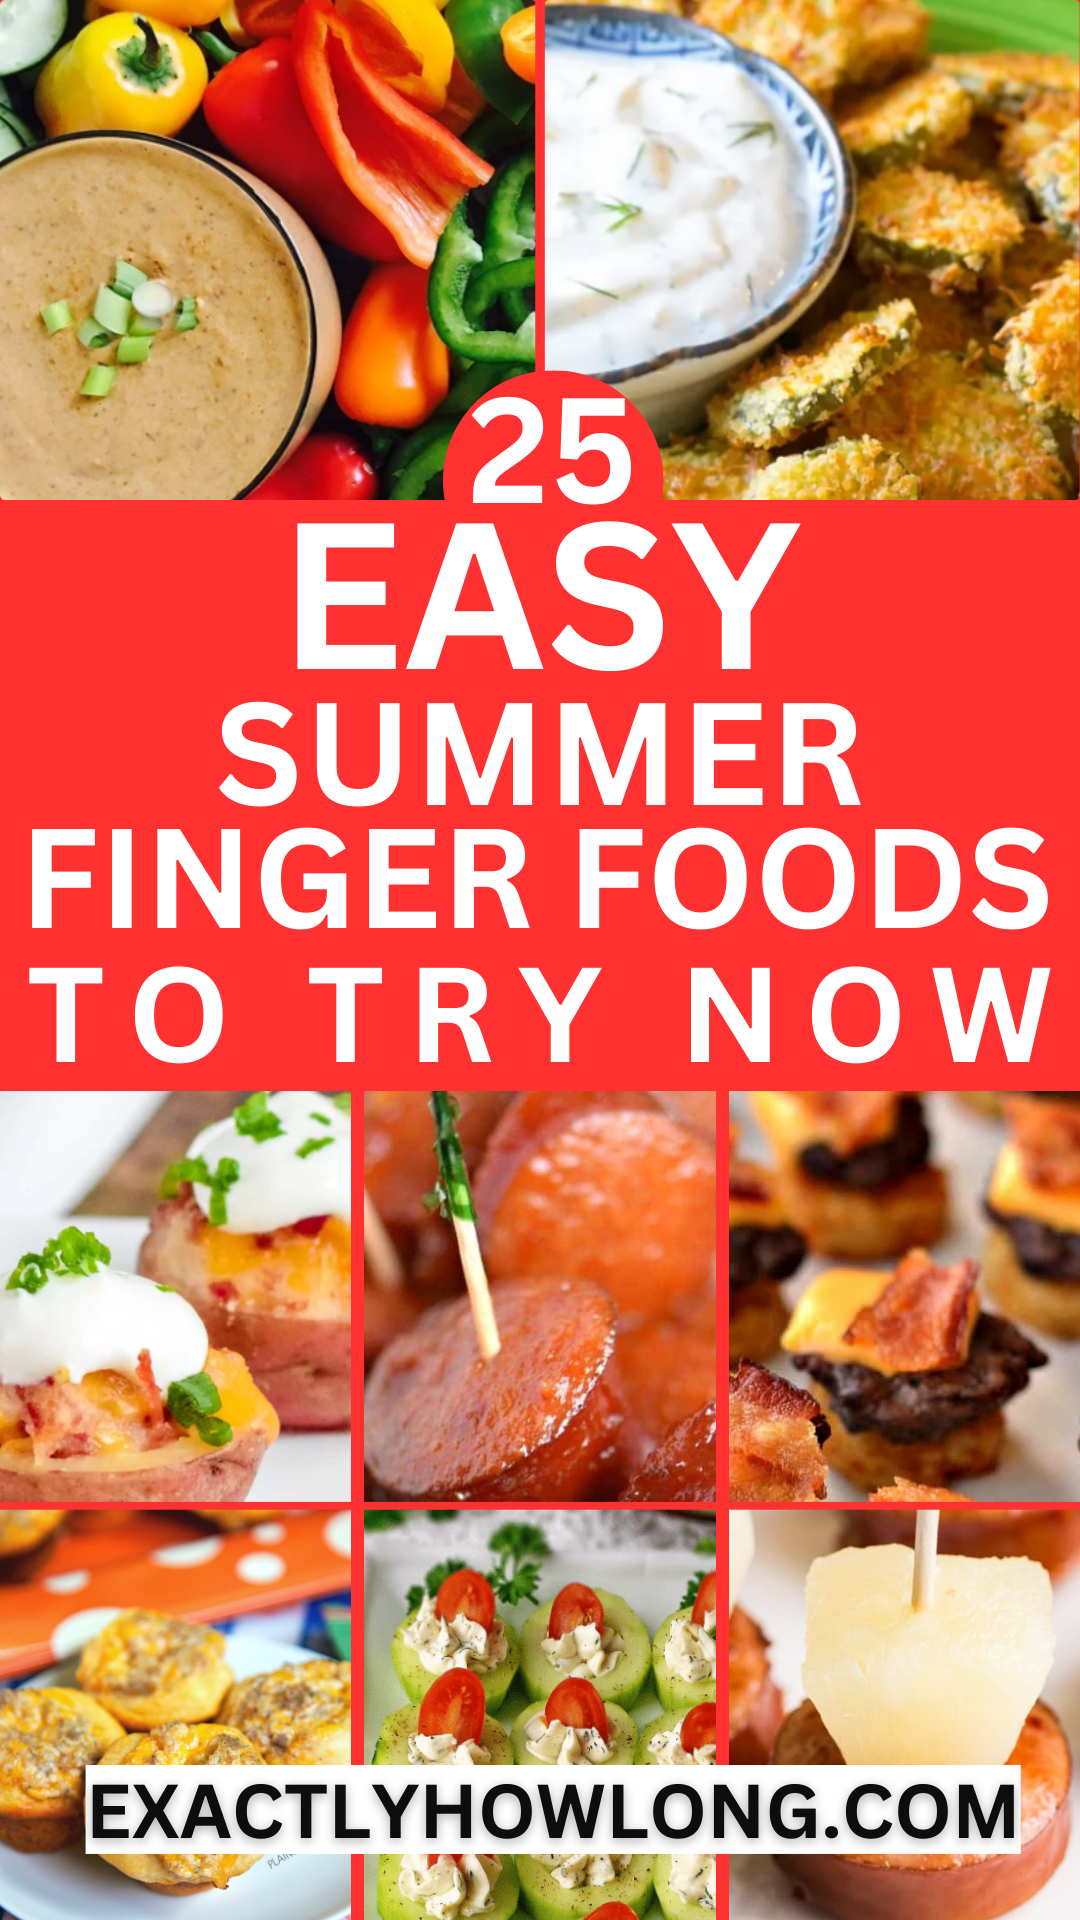 Summer Finger Foods